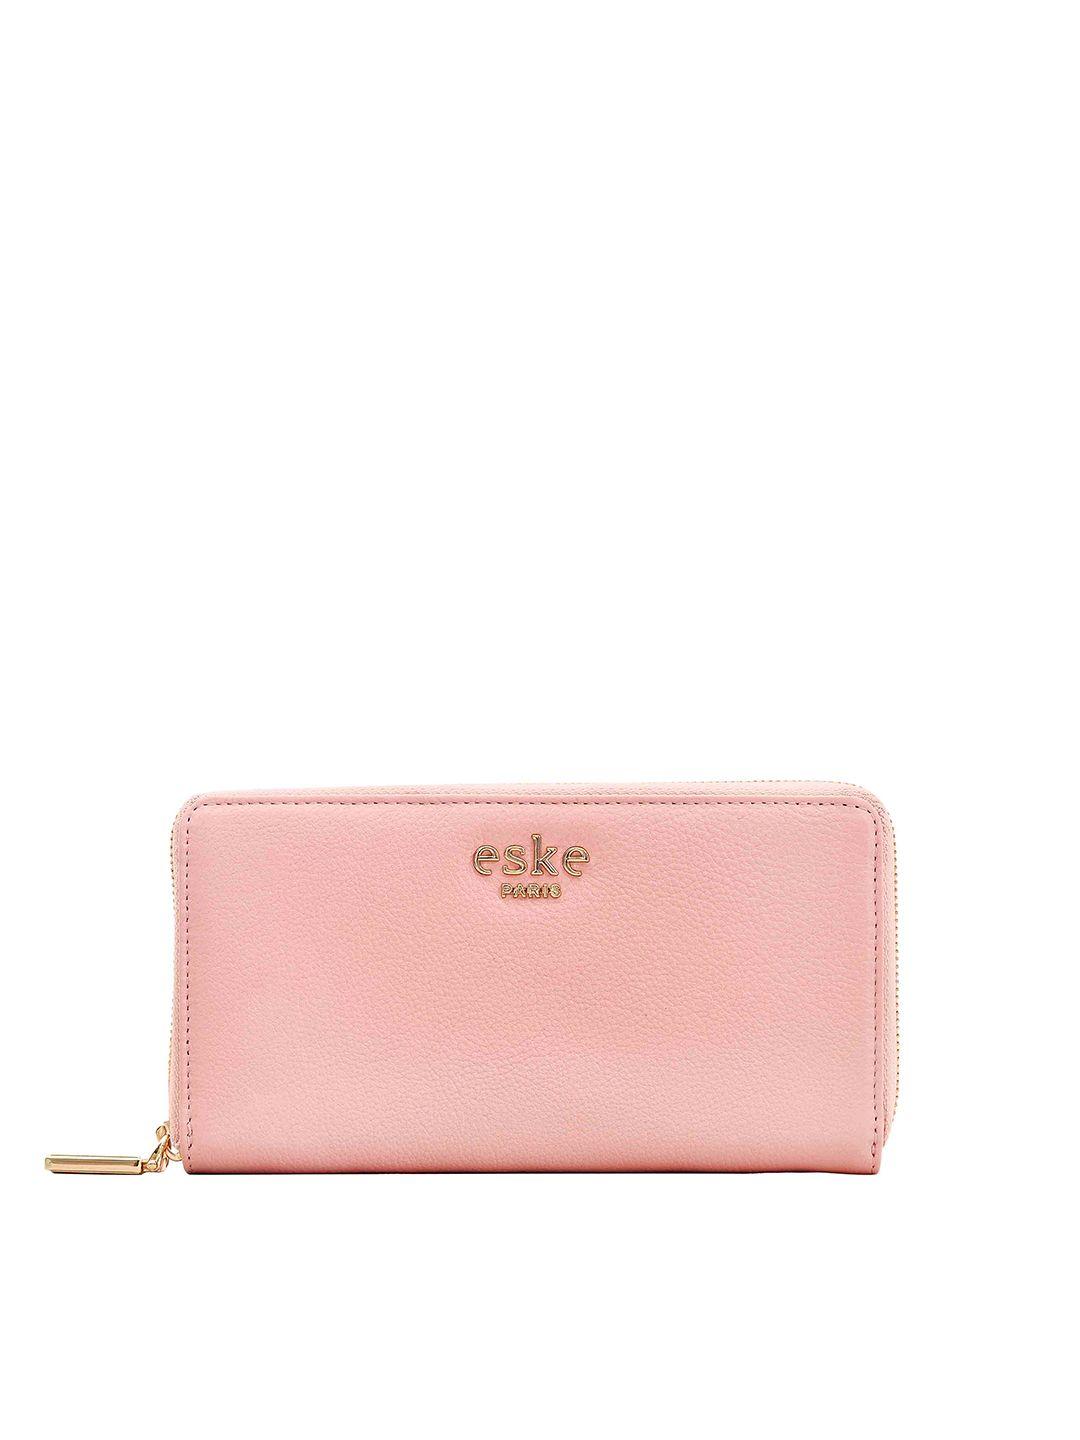 eske women leather rfid zip around wallet